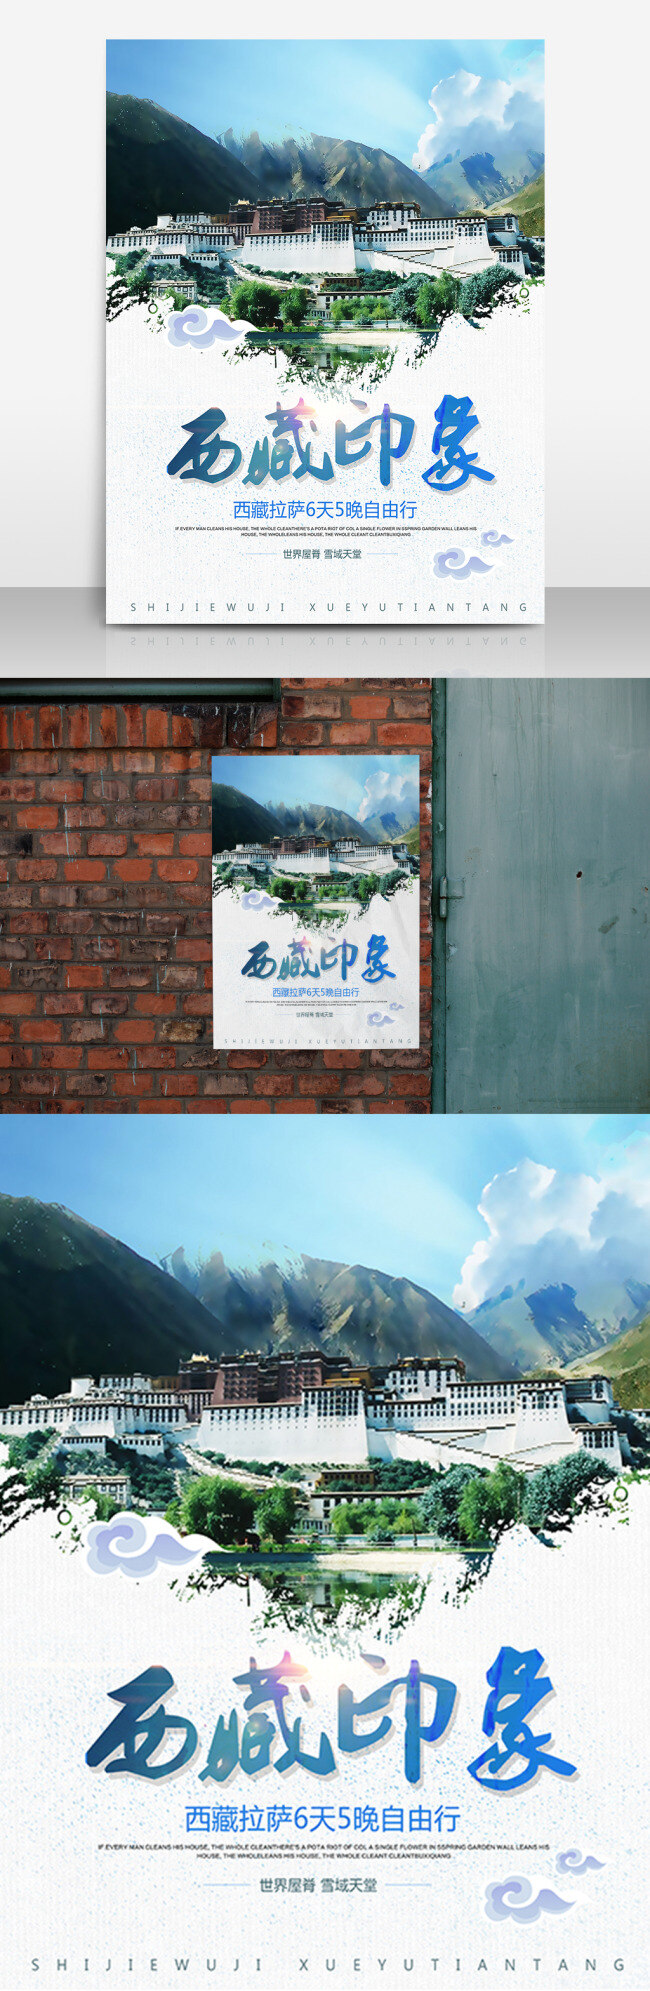 西藏 印象 旅游 海报 高清 团购 自驾游 天堂 时尚 创意